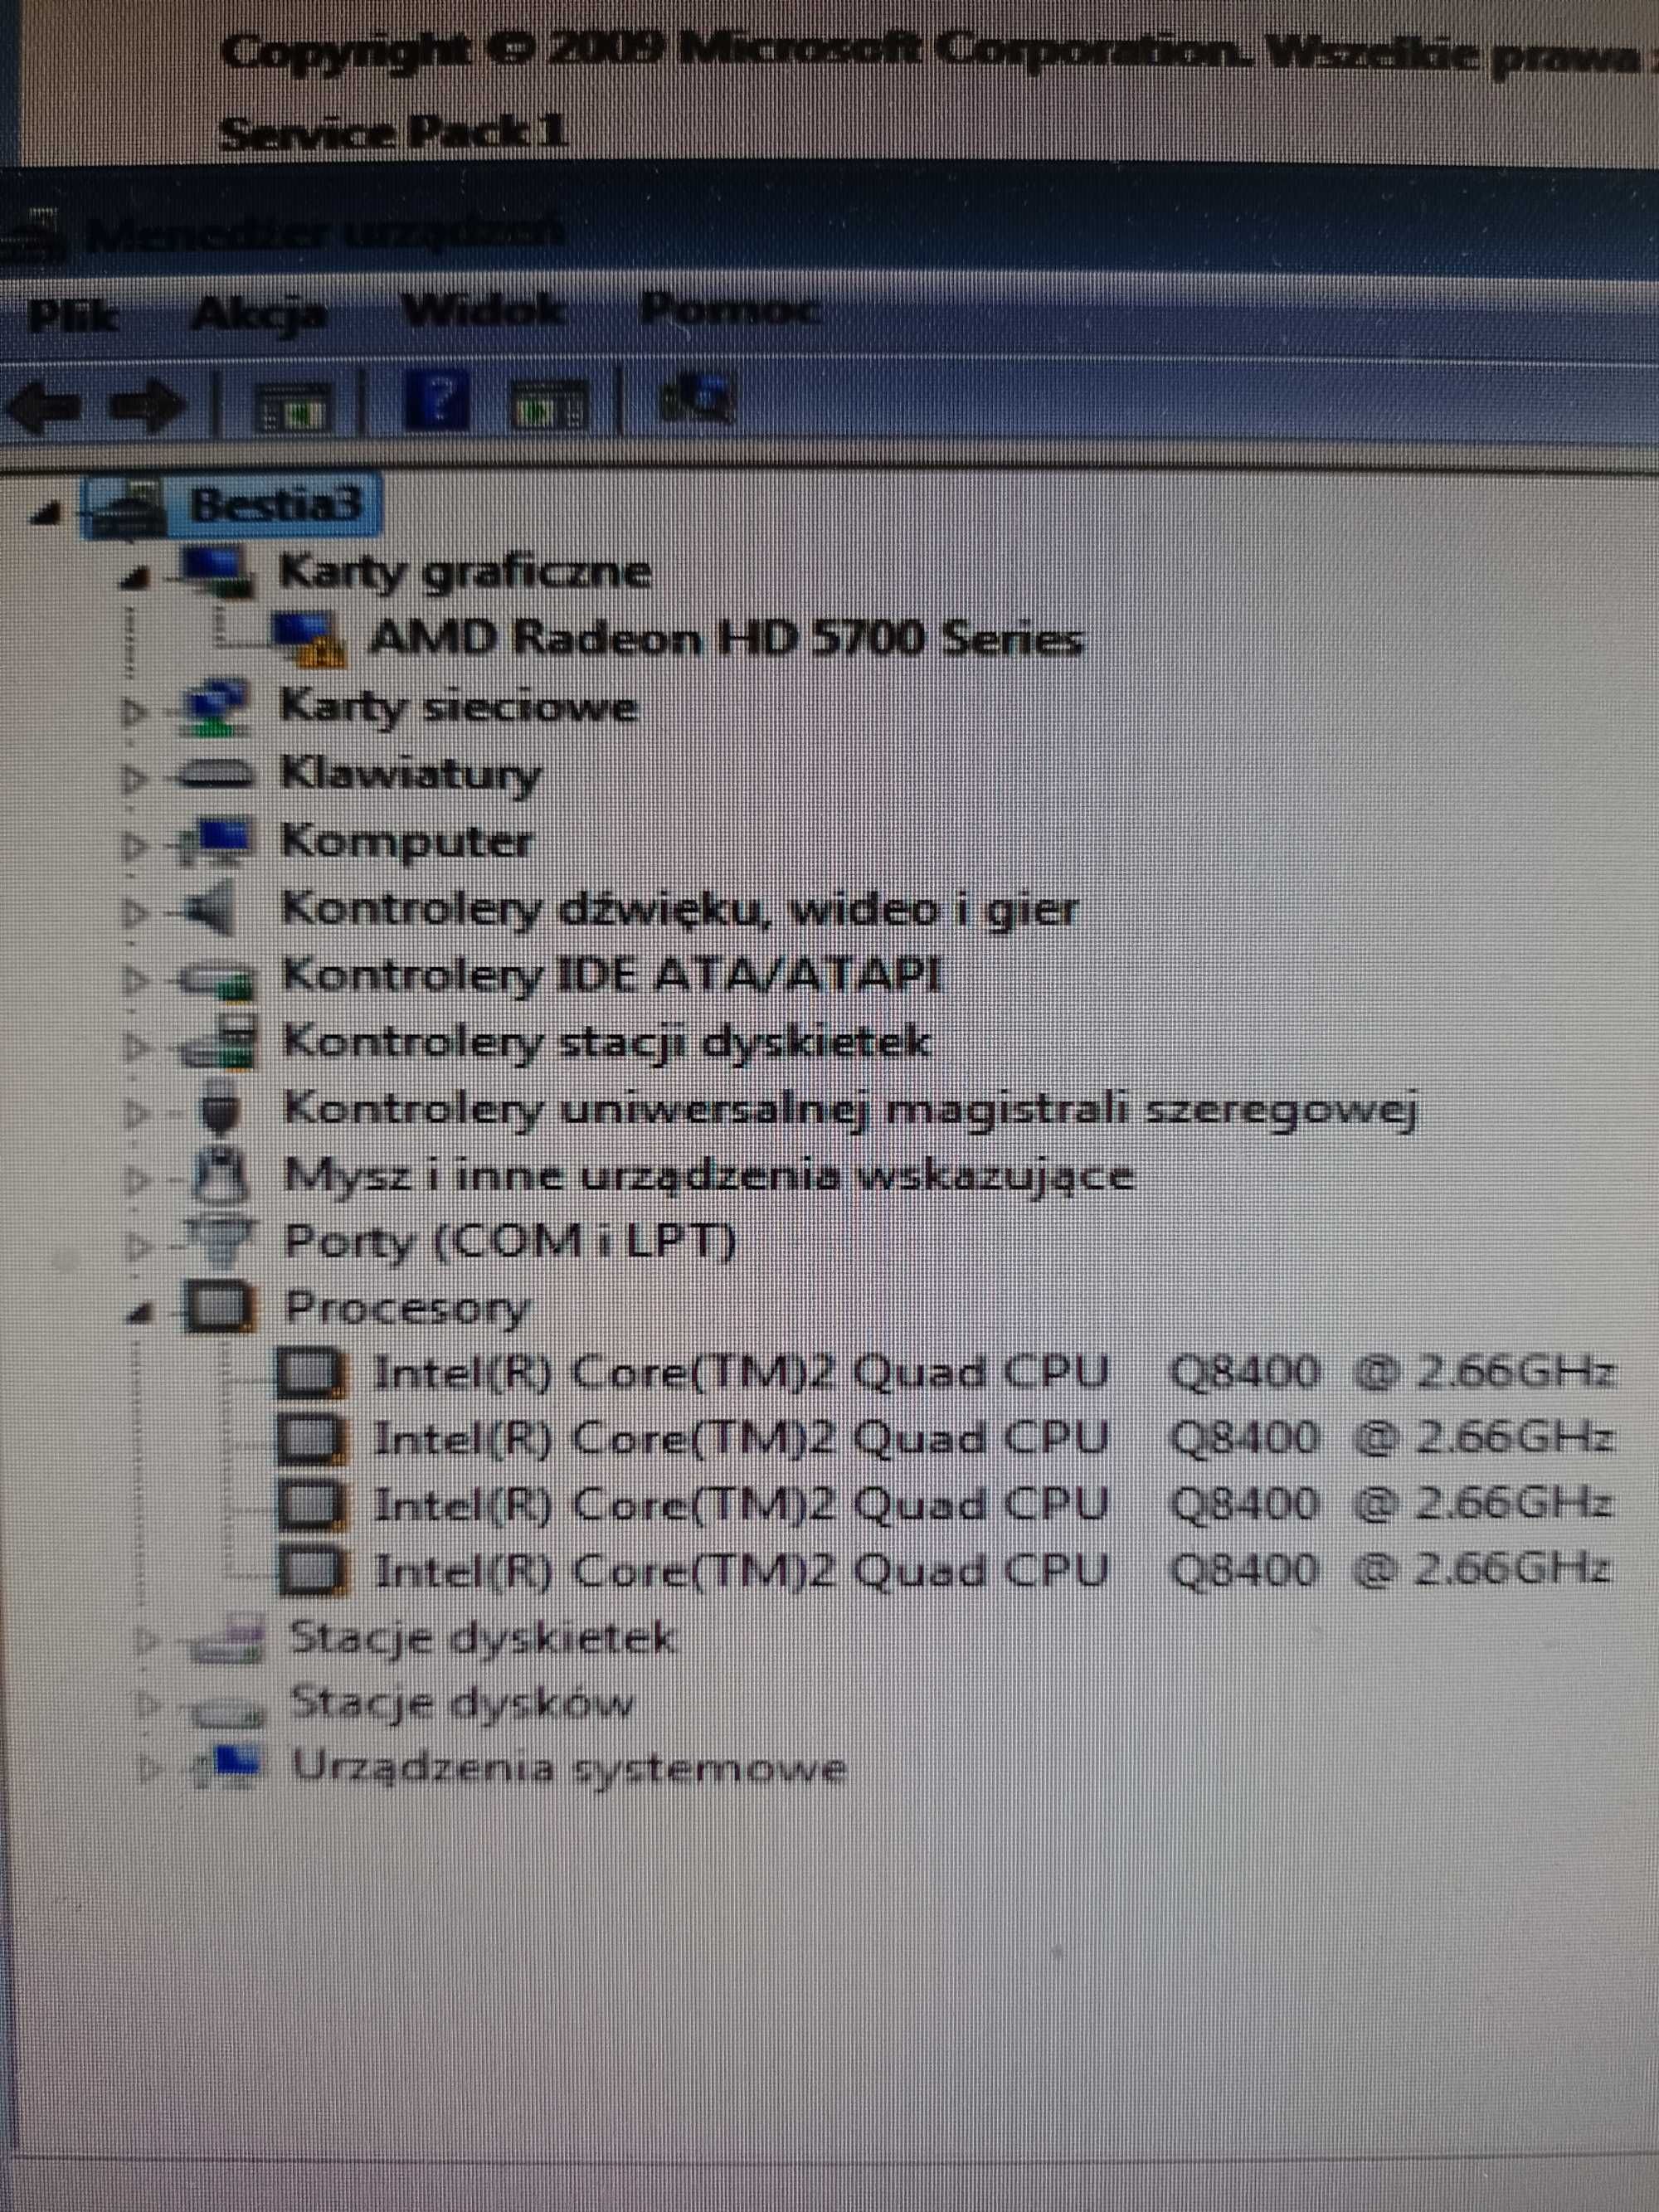 Komputer Q8400, HD5770, Corsair 450w